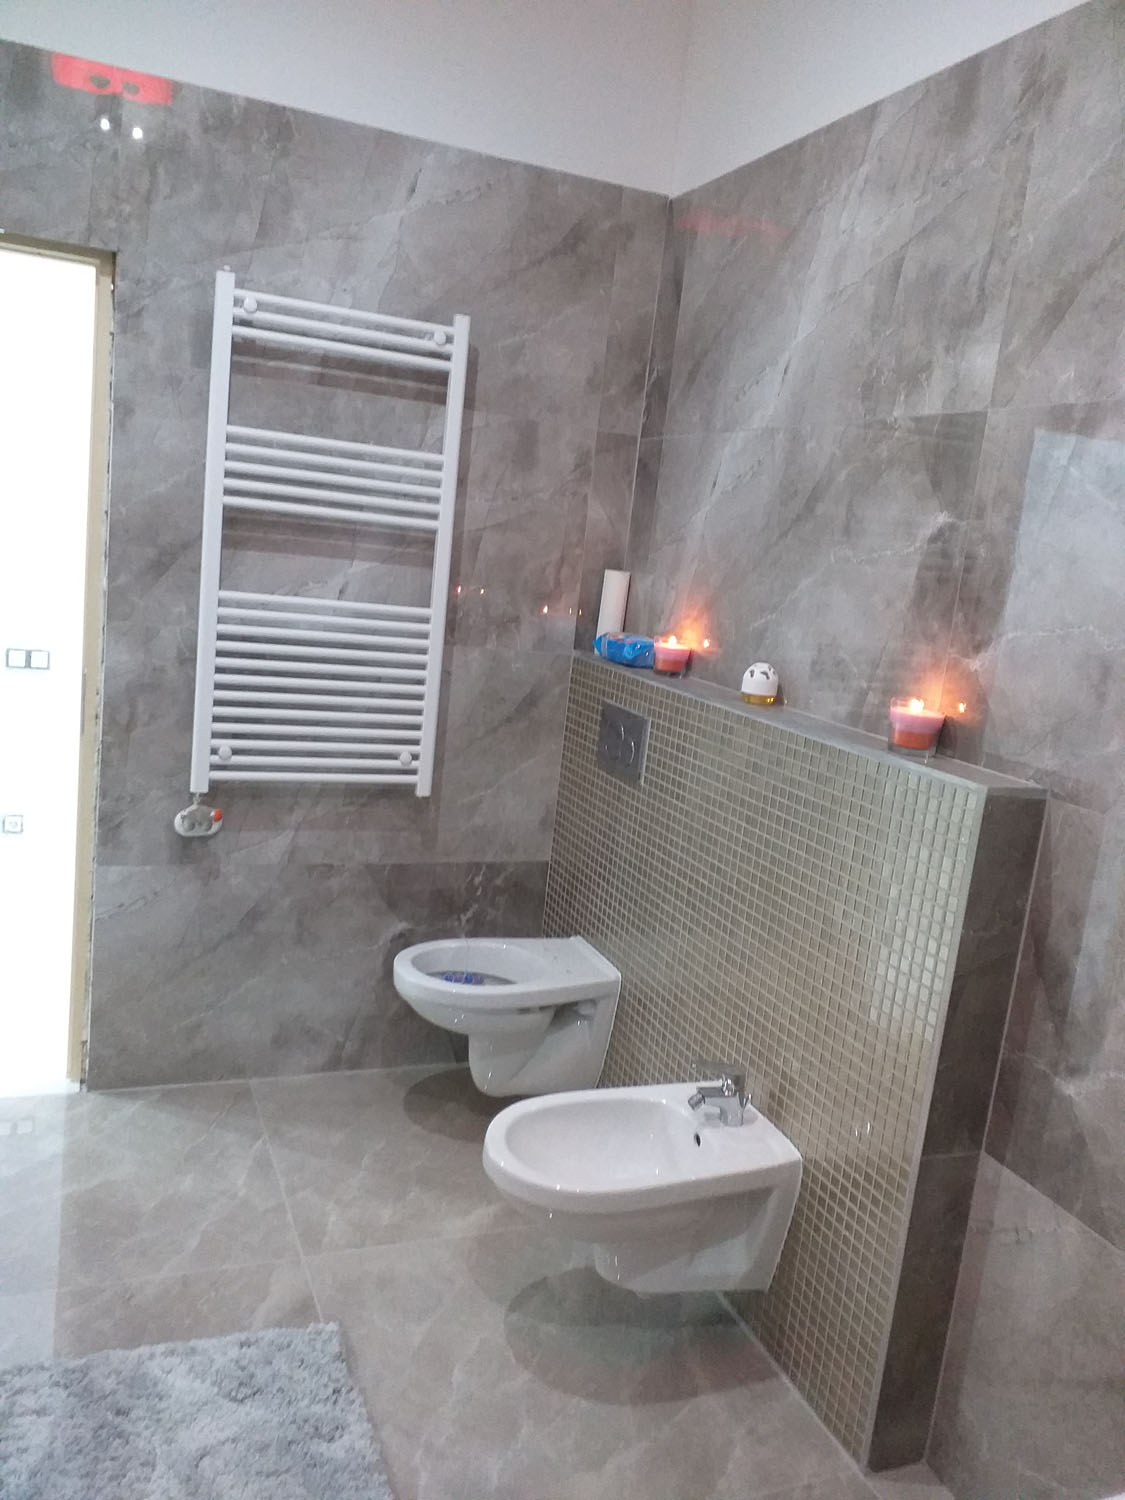 Panel fürdőszoba felújítás segítségével egyedivé tehető a helyiség!